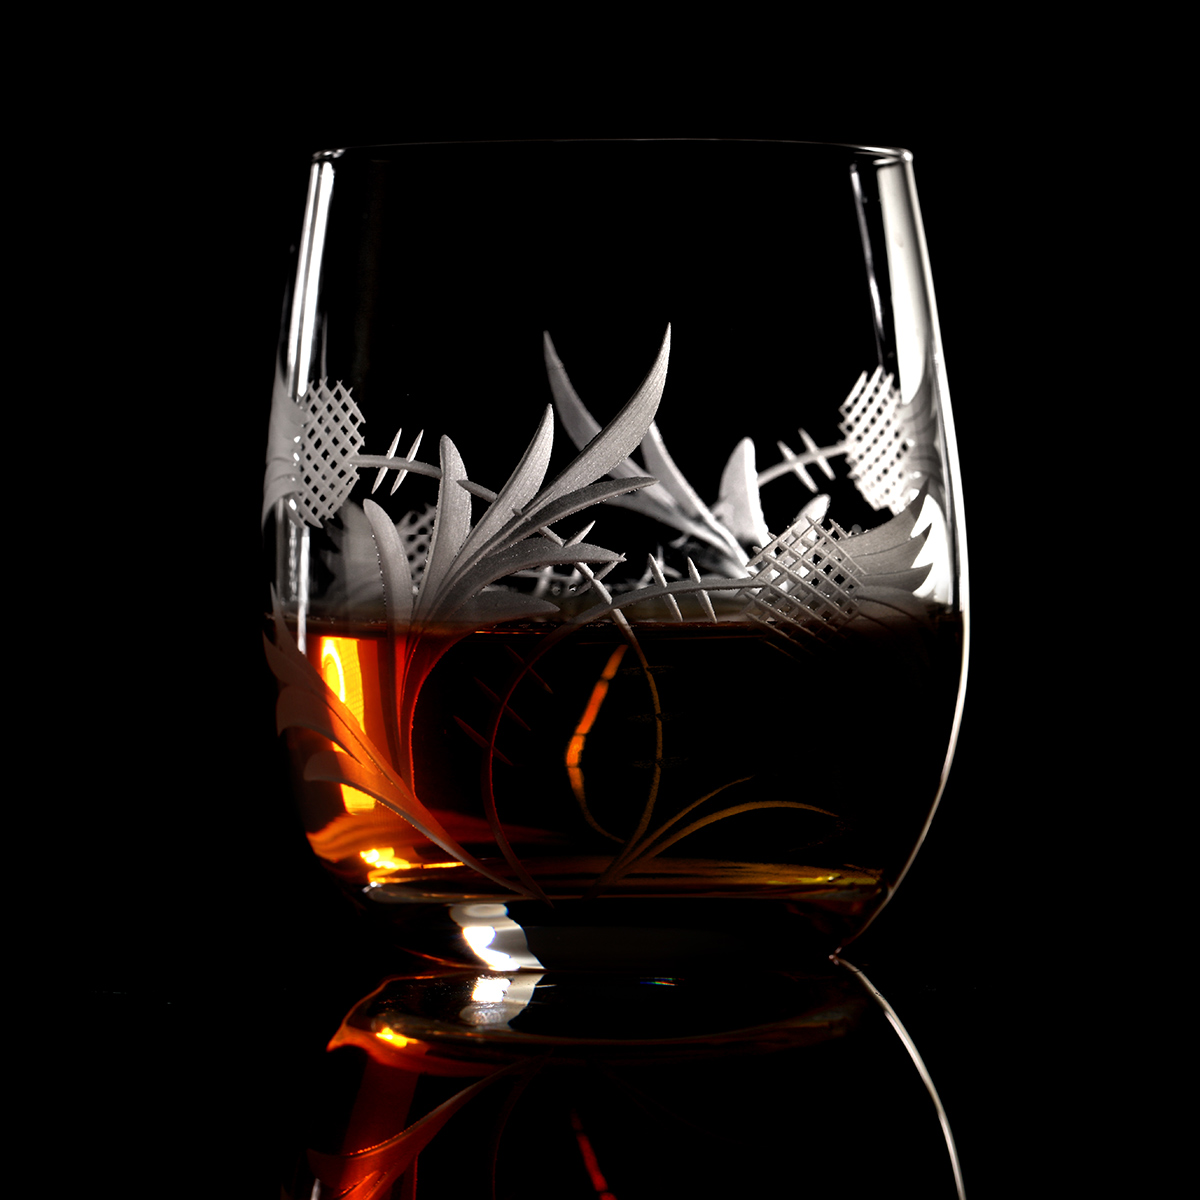 Flower of Scotland Barrel Tumbler - Kristall Whiskyglas mit Distelschliff aus Schottland